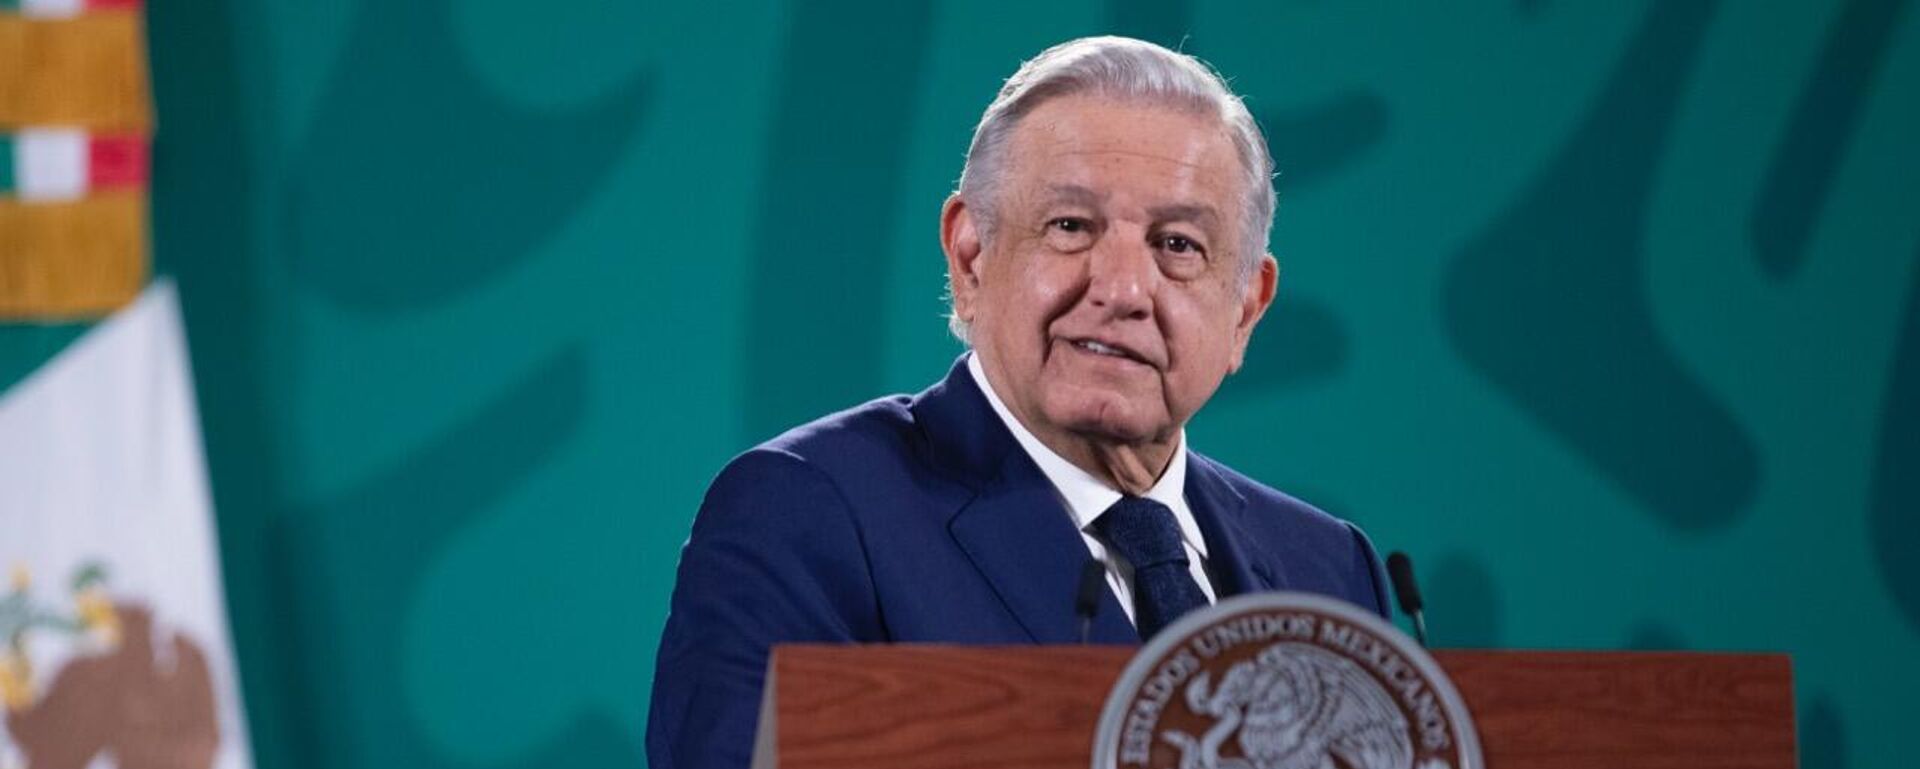 Andrés Manuel López Obrador, presidente de México - Sputnik Mundo, 1920, 08.10.2021